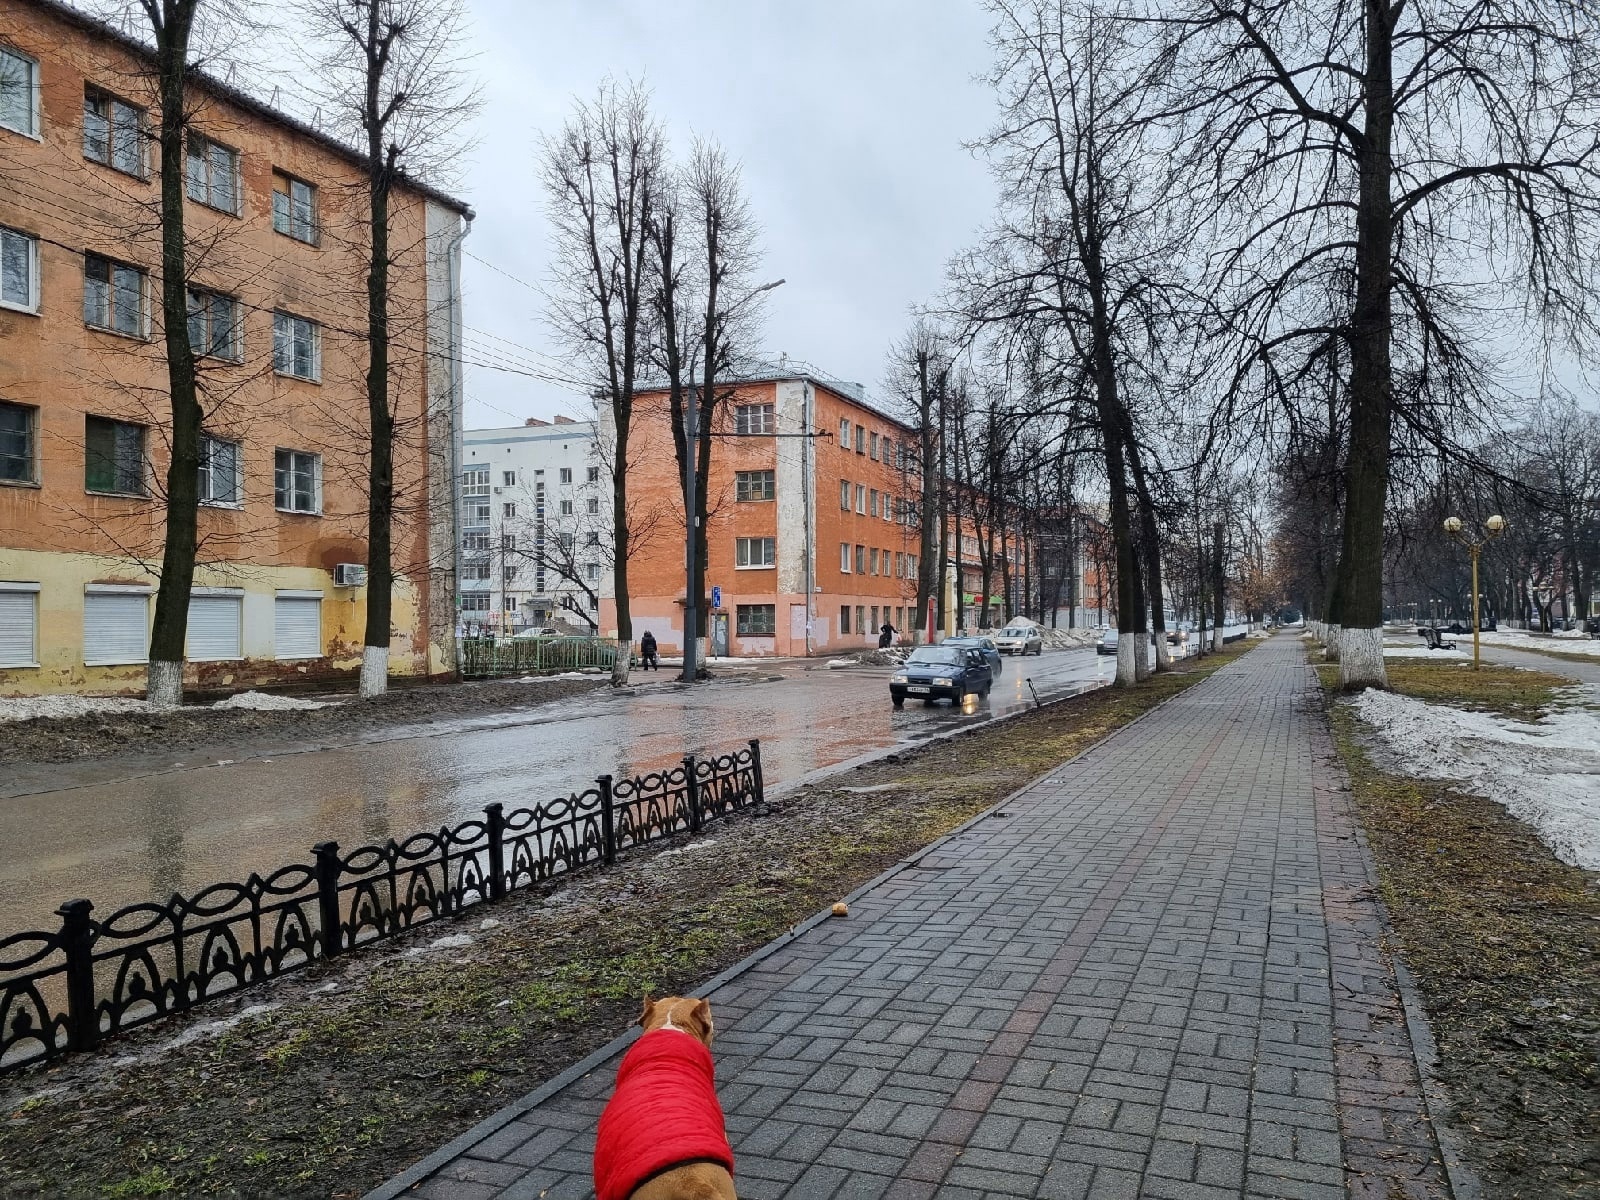  Приехал утром и погрузил в Ладу: поймали похитителя чугунного забора в центре Ярославля 